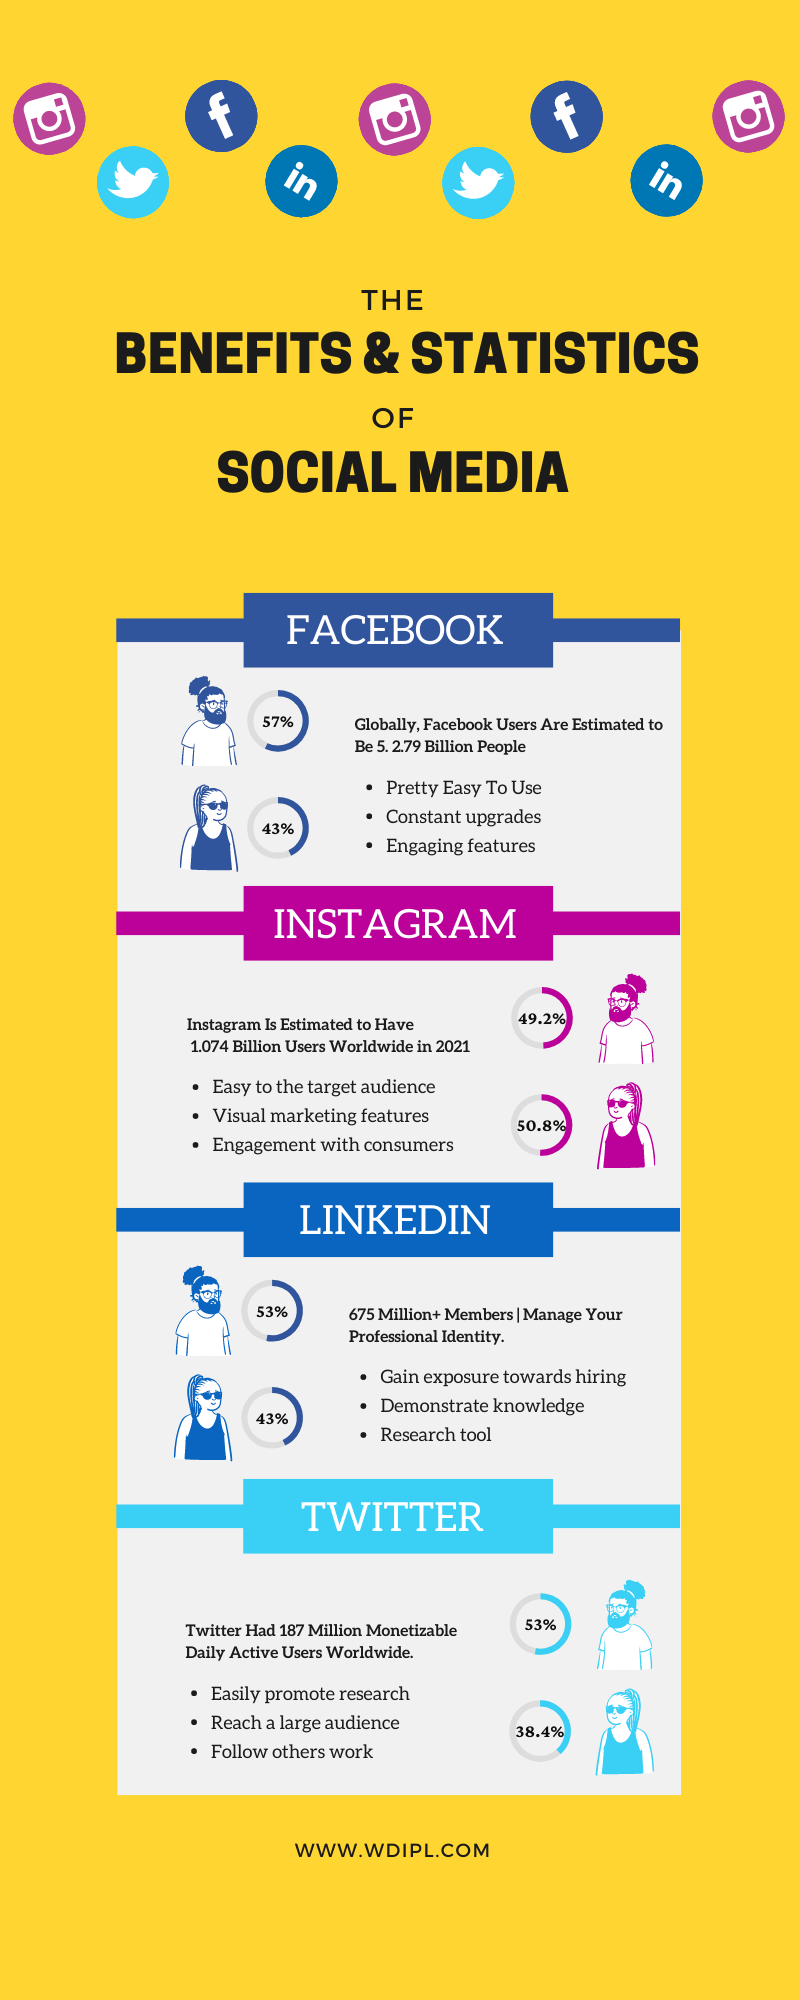 The Benefits & Statistics of Social Media